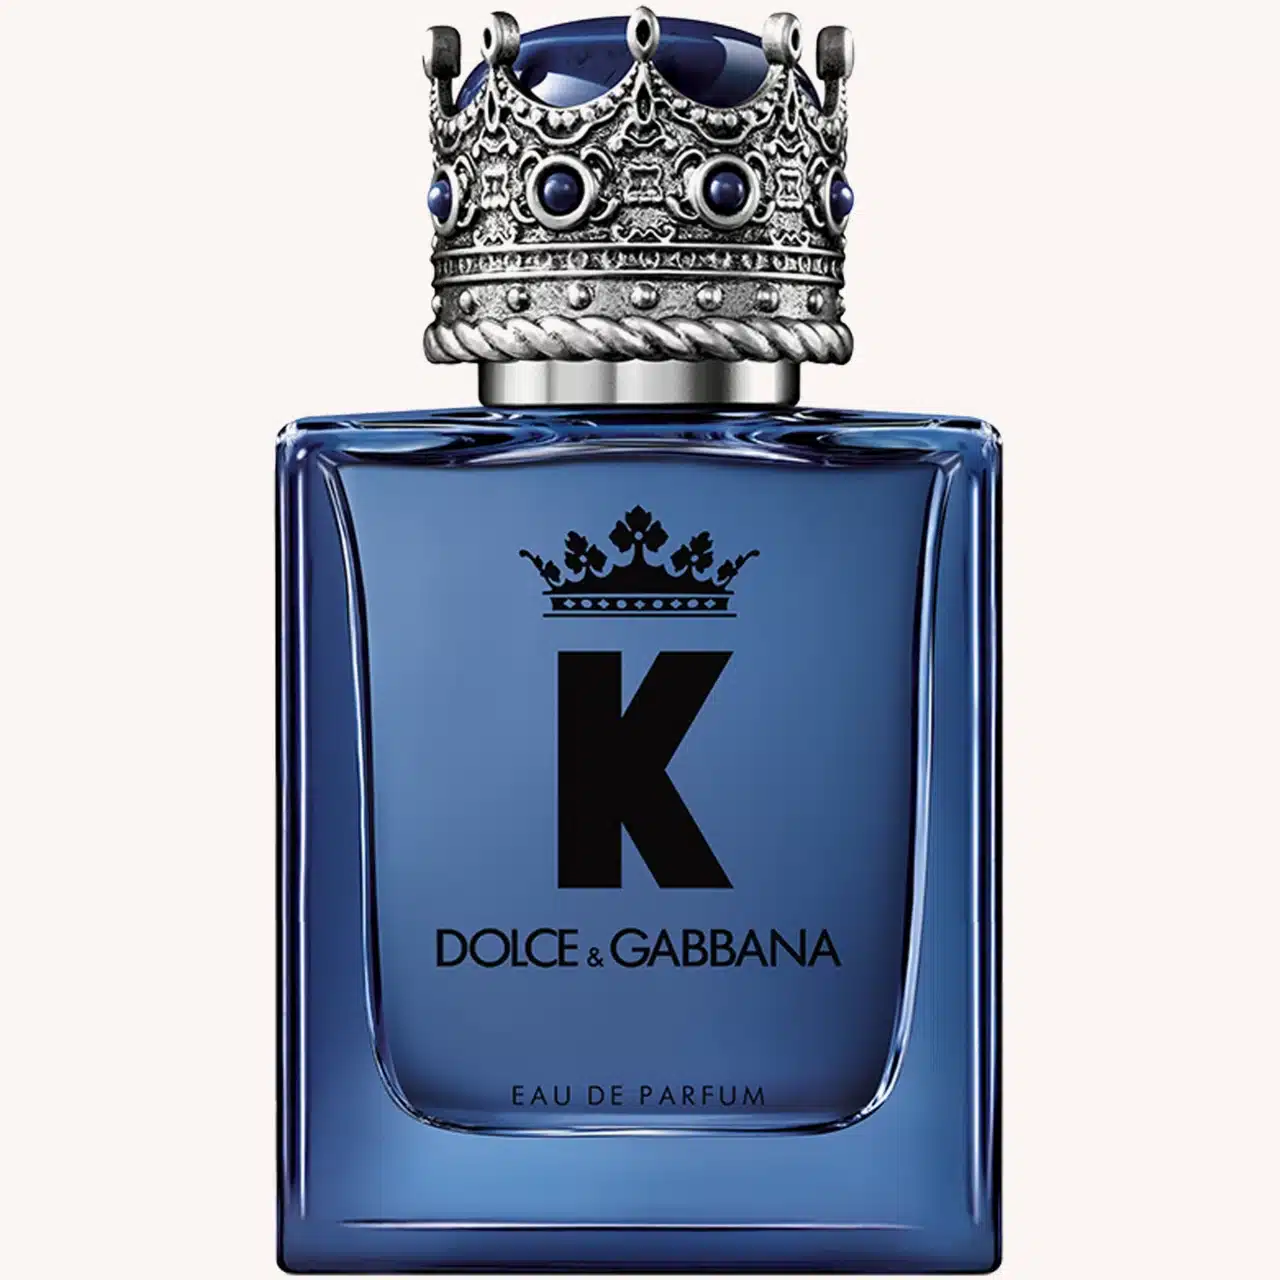 En sensitiv og unik duft til han. K by Dolce&Gabbana Eau De Parfum, kr 935 fra Kicks.